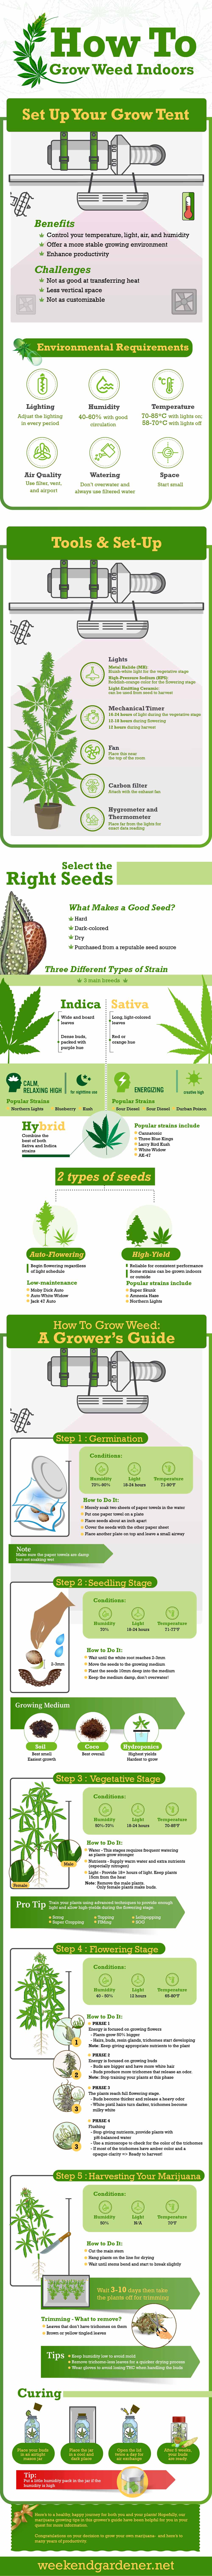 Beginner's Guide To Growing Weed Indoors 